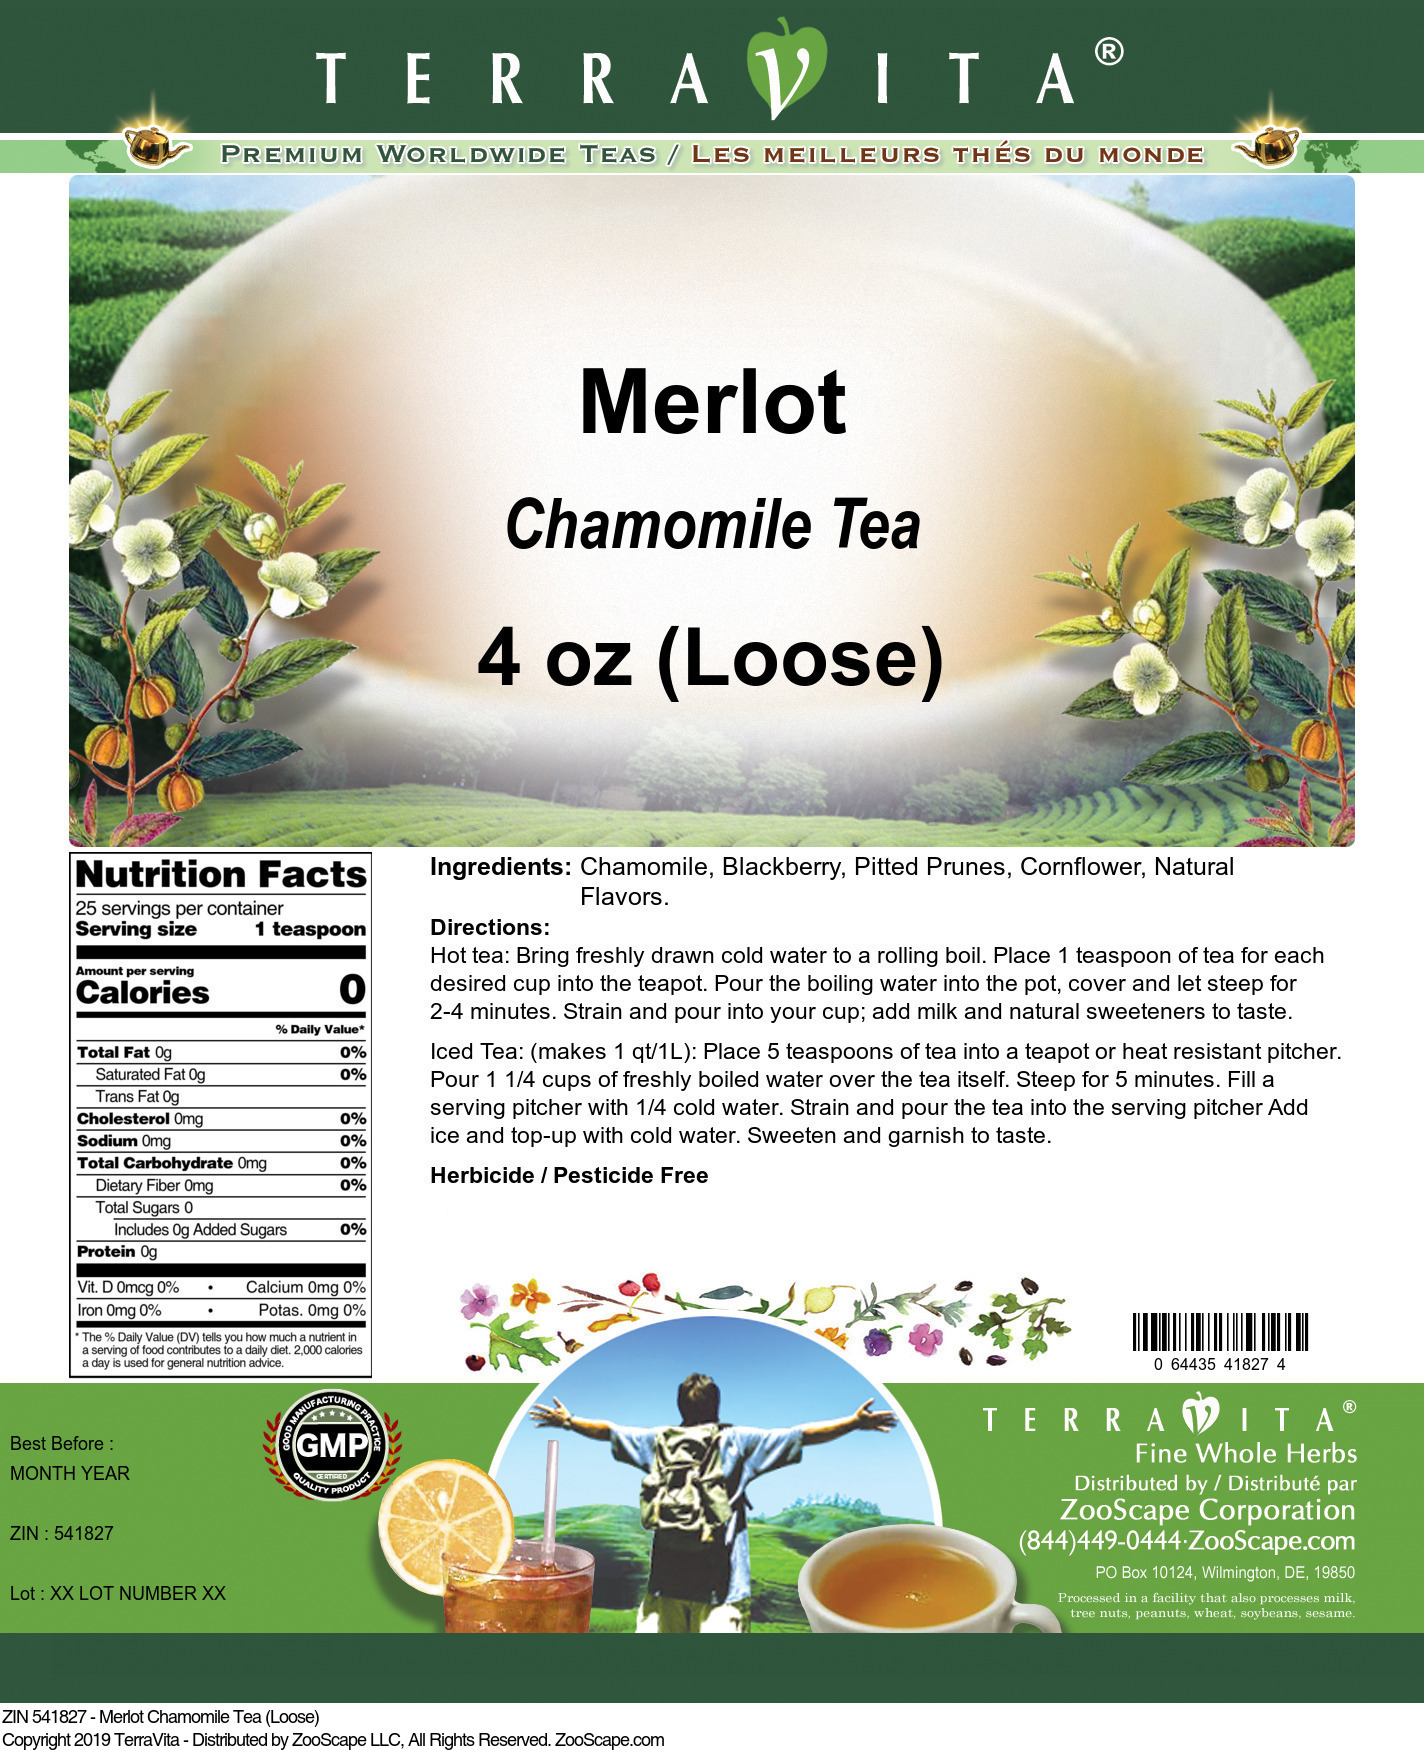 Merlot Chamomile Tea (Loose) - Label